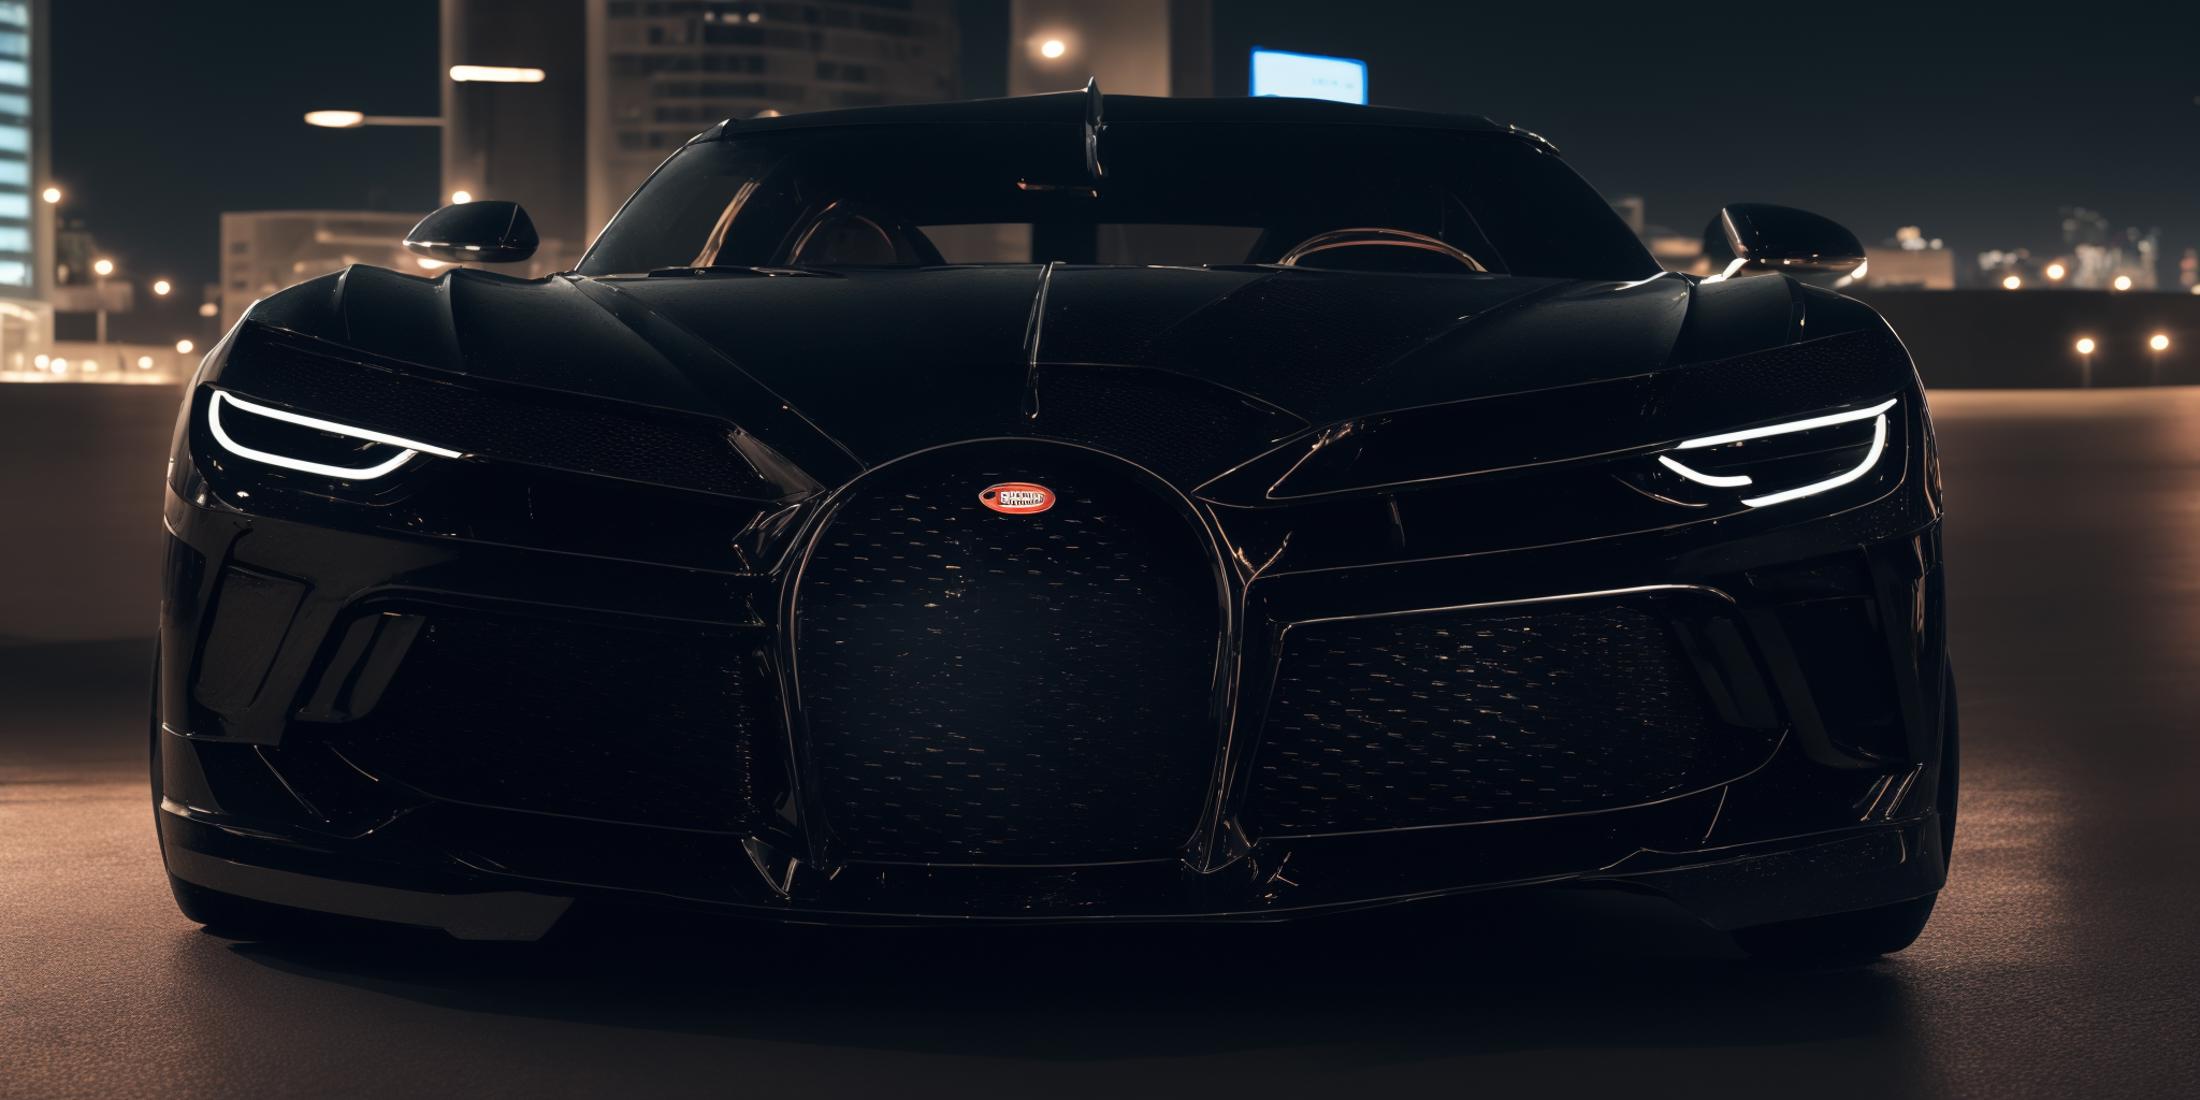 Bugatti La Voiture Noire image by Michelangelo